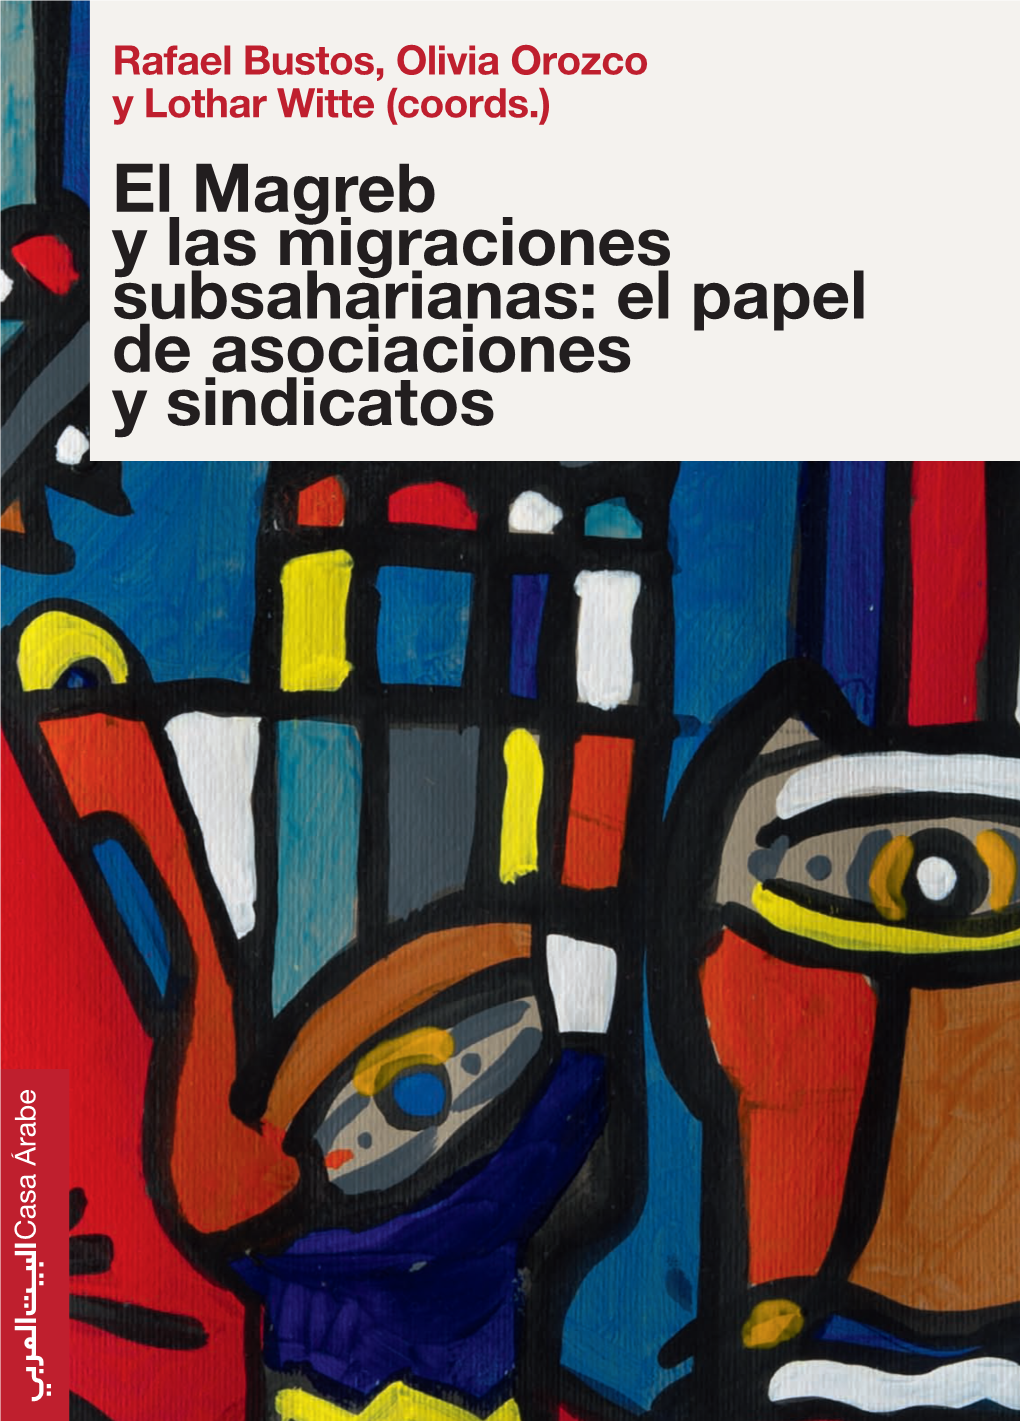 El Magreb Y Las Migraciones Subsaharianas El Magreb Y Lothar Witte (Coords.) Rafael Bustos, Olivia Orozco